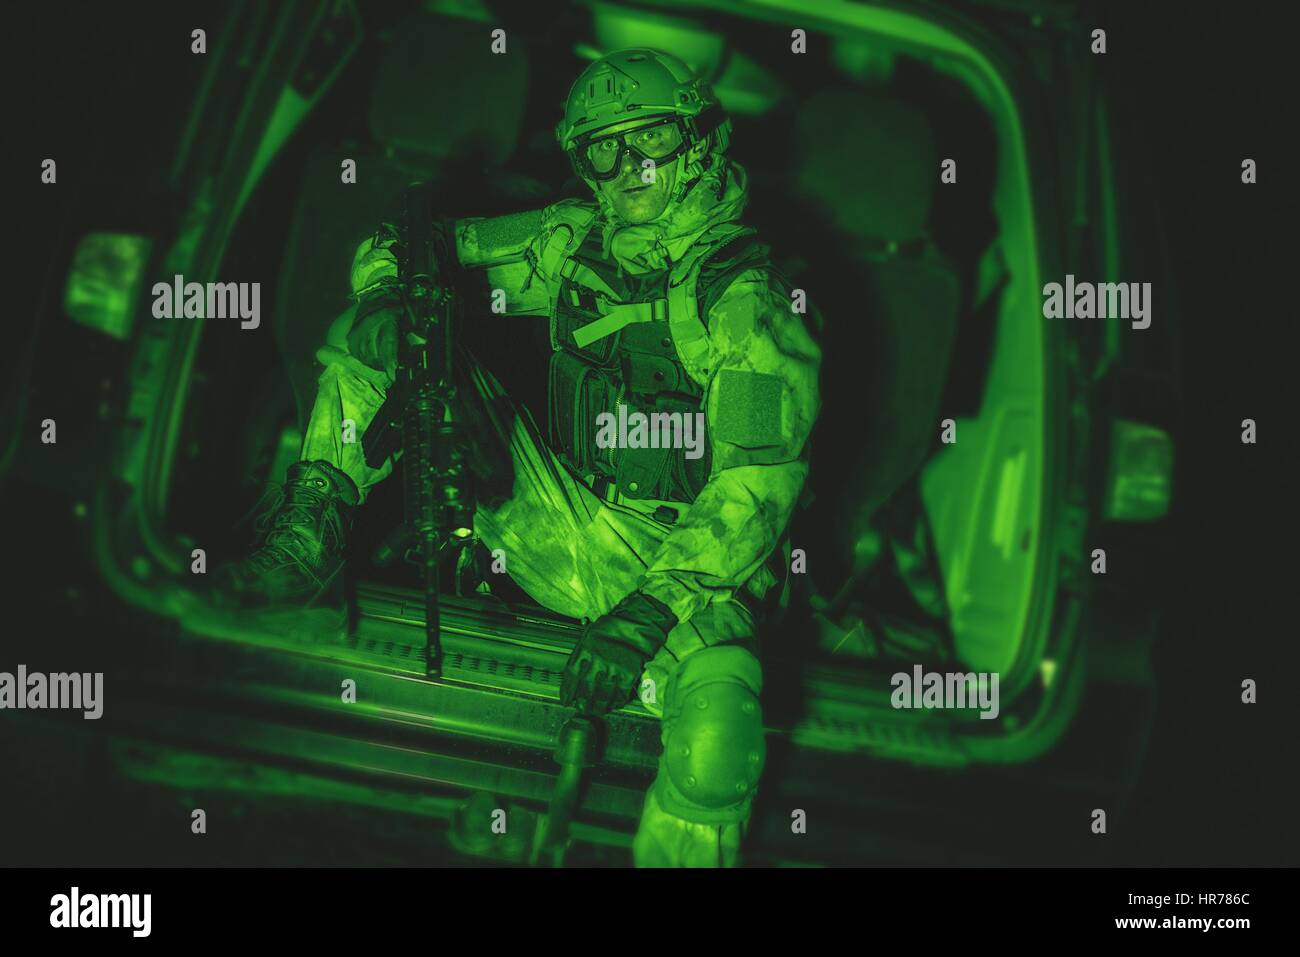 Soldat in der Van. Nachtsicht Color-Grading. Militärische Technologien. Stockfoto